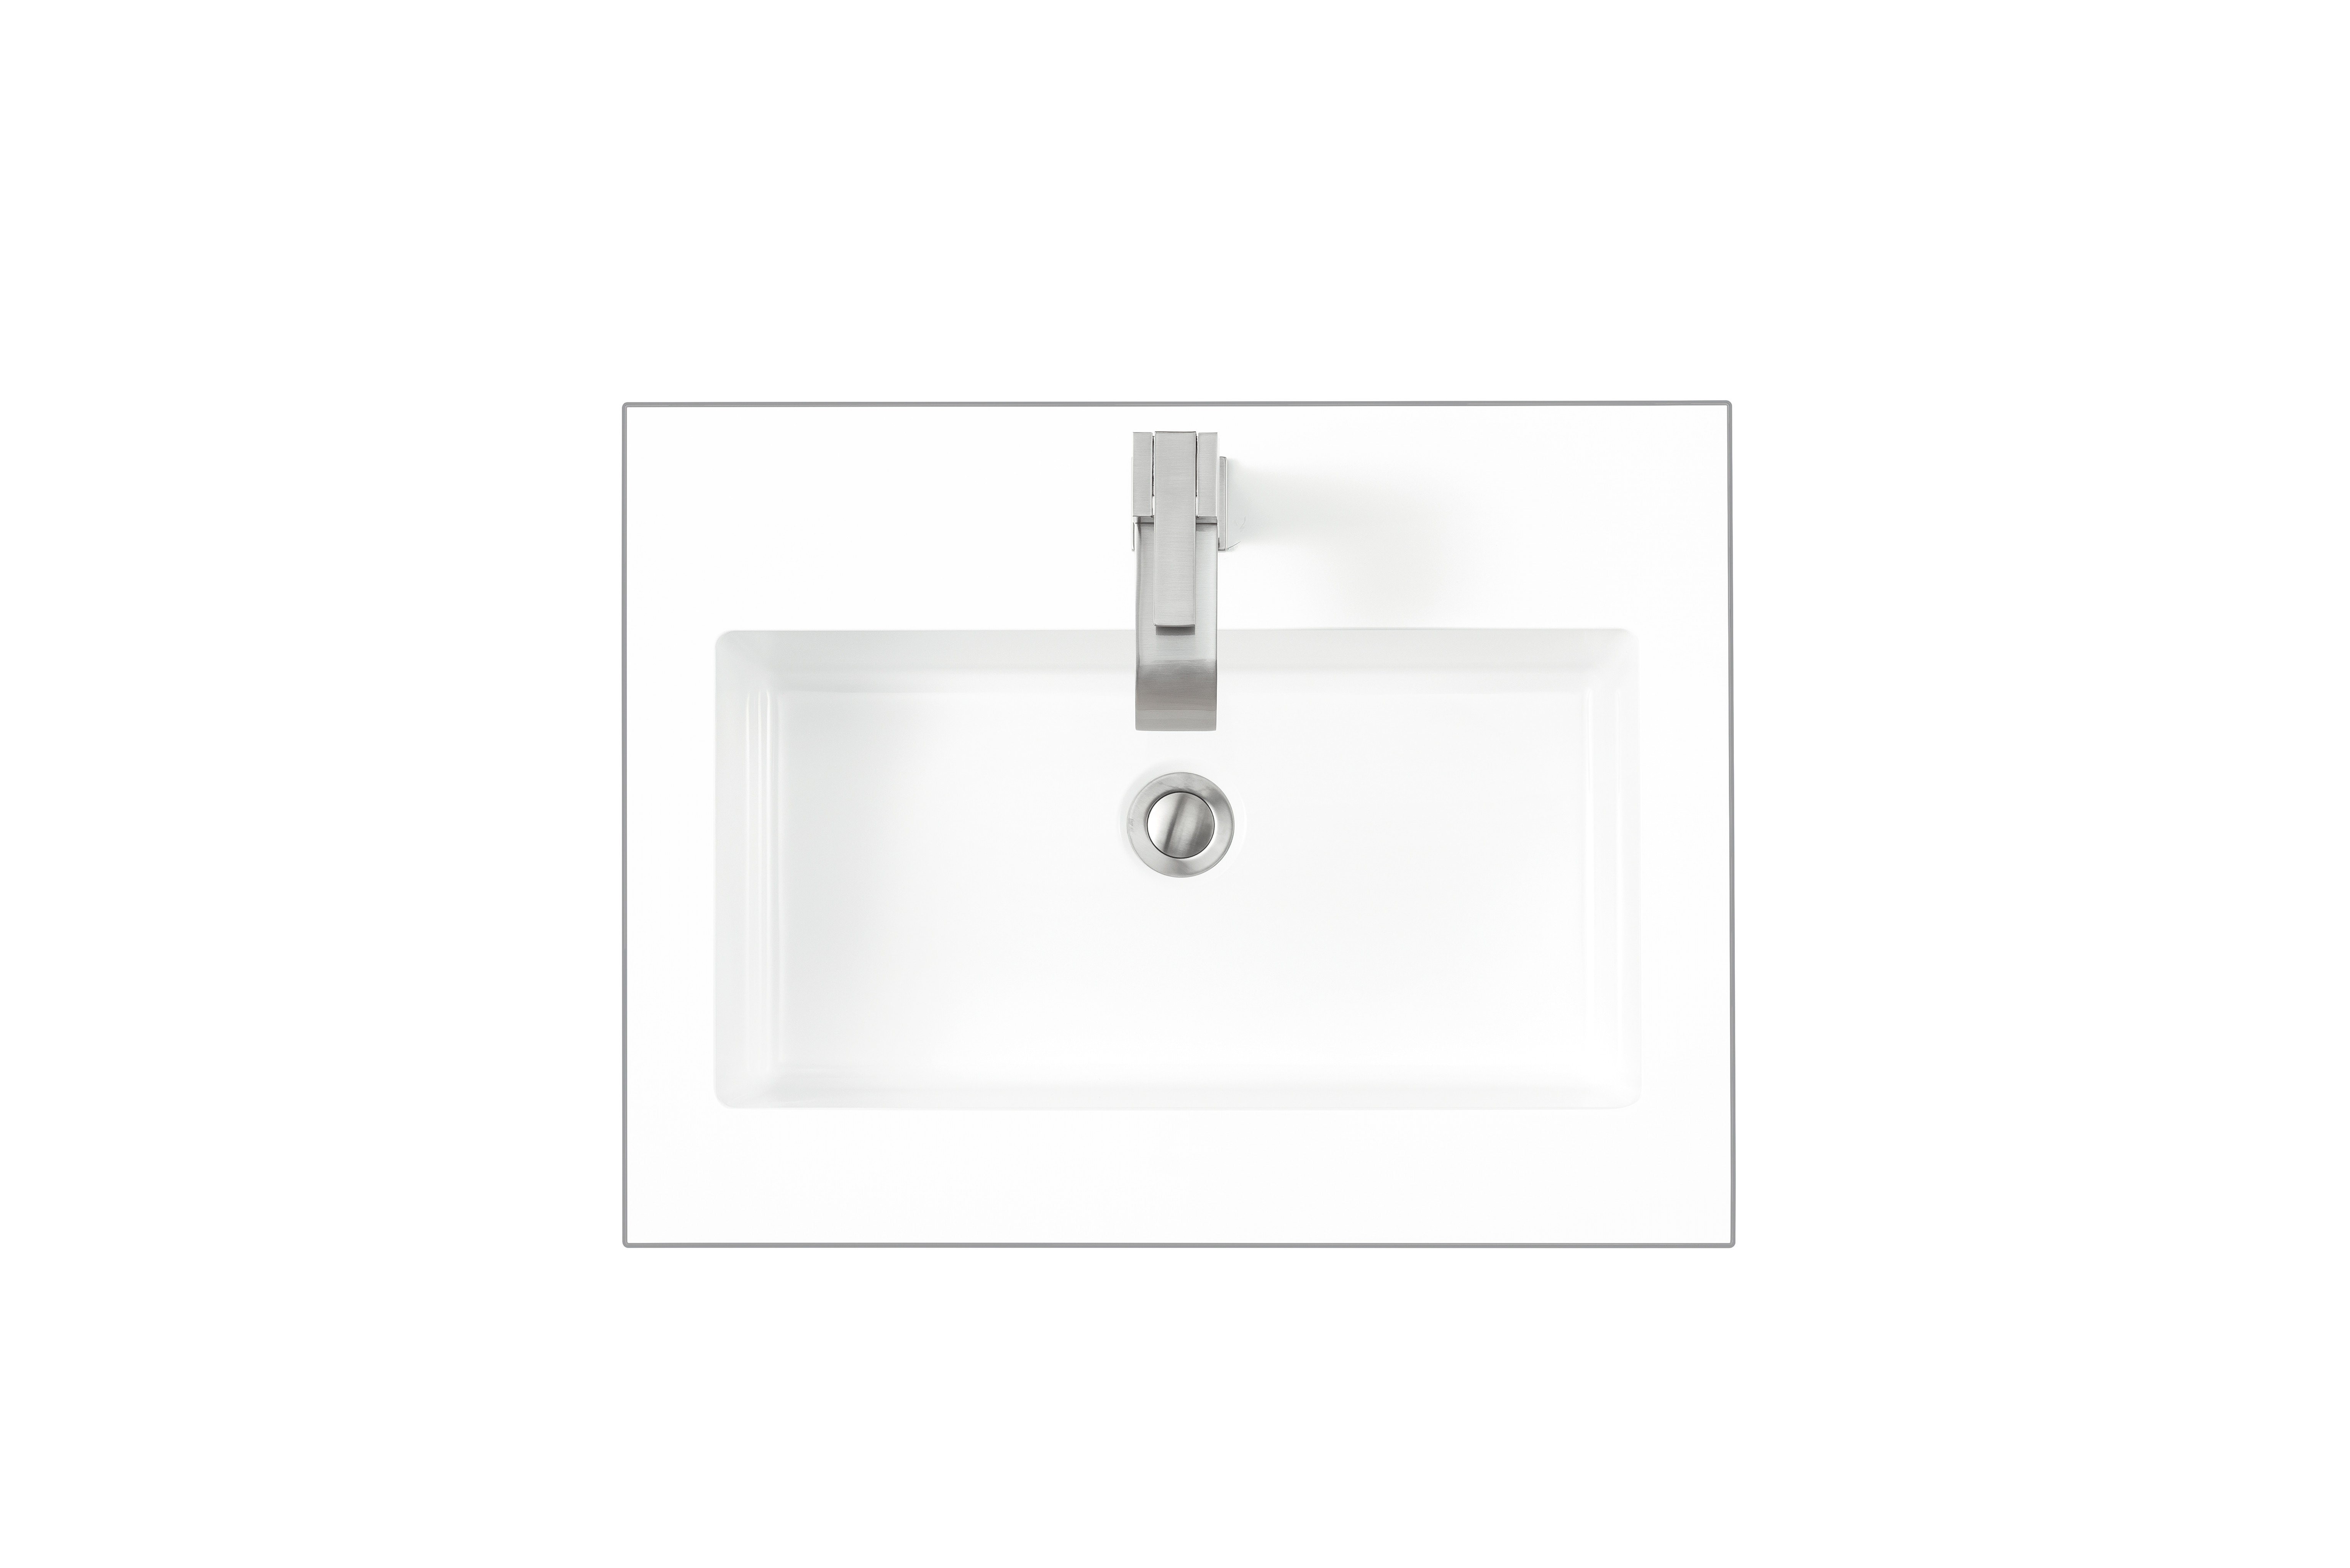 James Martin SWB-S23.6-GW 23.6" Single Sink Top, Glossy White